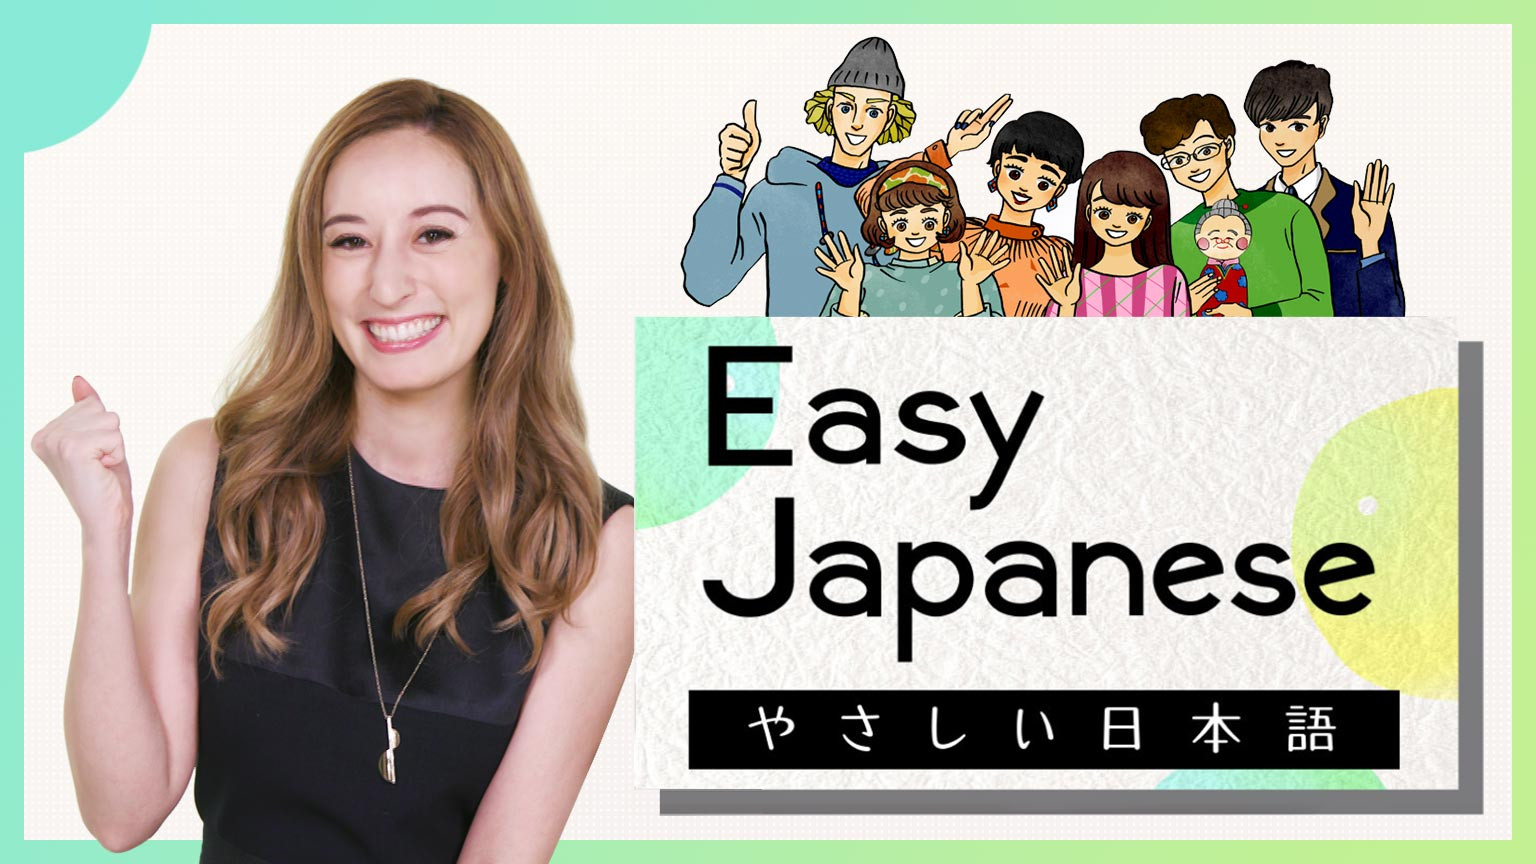 มาเรียนภาษาญี่ปุ่นกันเถอะ
Easy Japanese